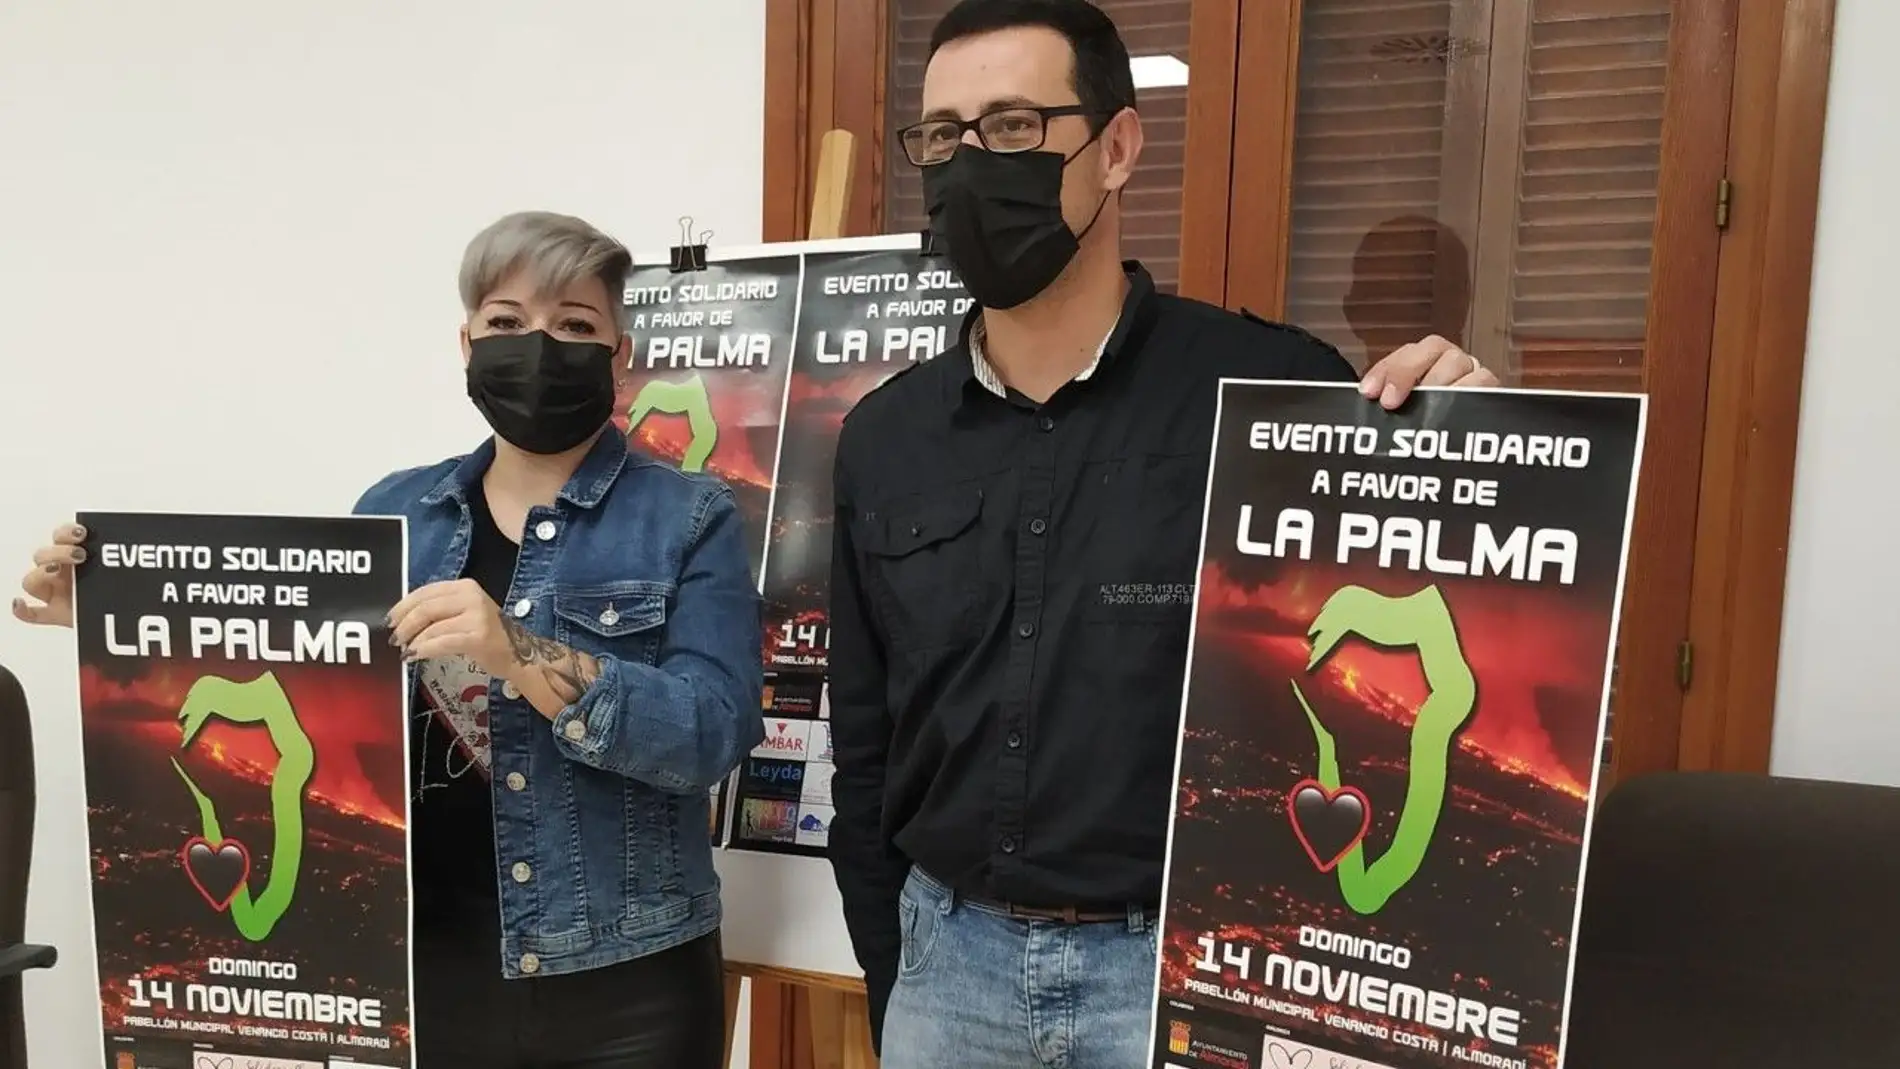 Almoradí organiza un evento solidario para La Palma el próximo domingo 14 de noviembre 